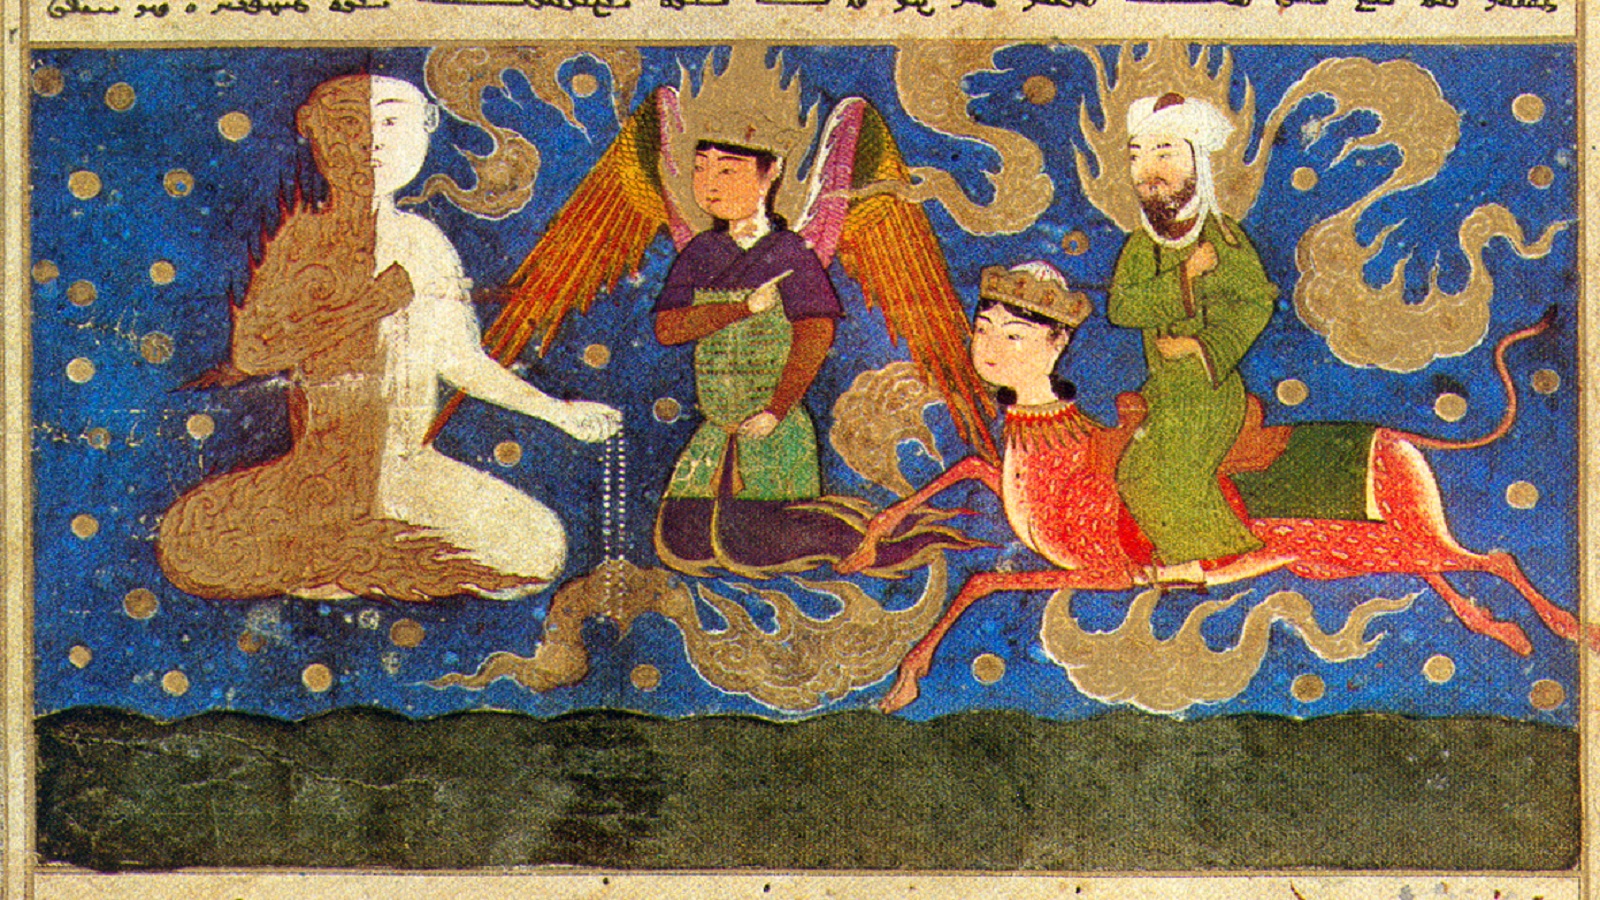  النبي أمام ملاك "نصفه من النار ونصفه من الثلج،"معراج نامه"، هرات، 1436، المكتبة الوطنية الفرنسية.